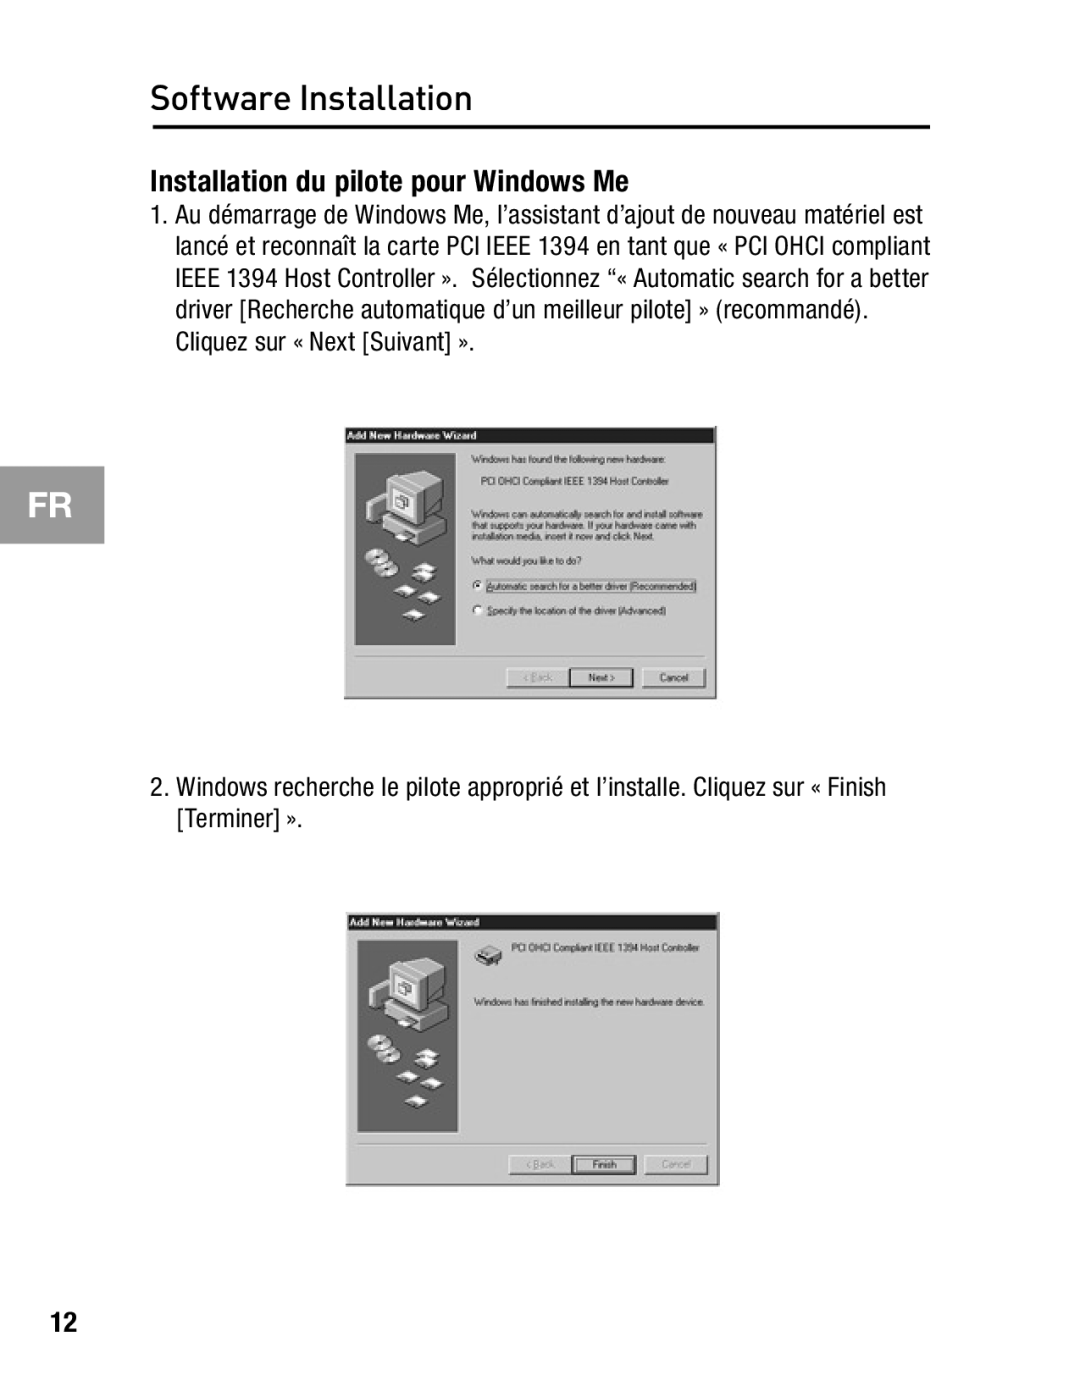 Belkin F5U503, F5U502 Installation du pilote pour Windows Me, Cliquez sur « Next Suivant », Software Installation 